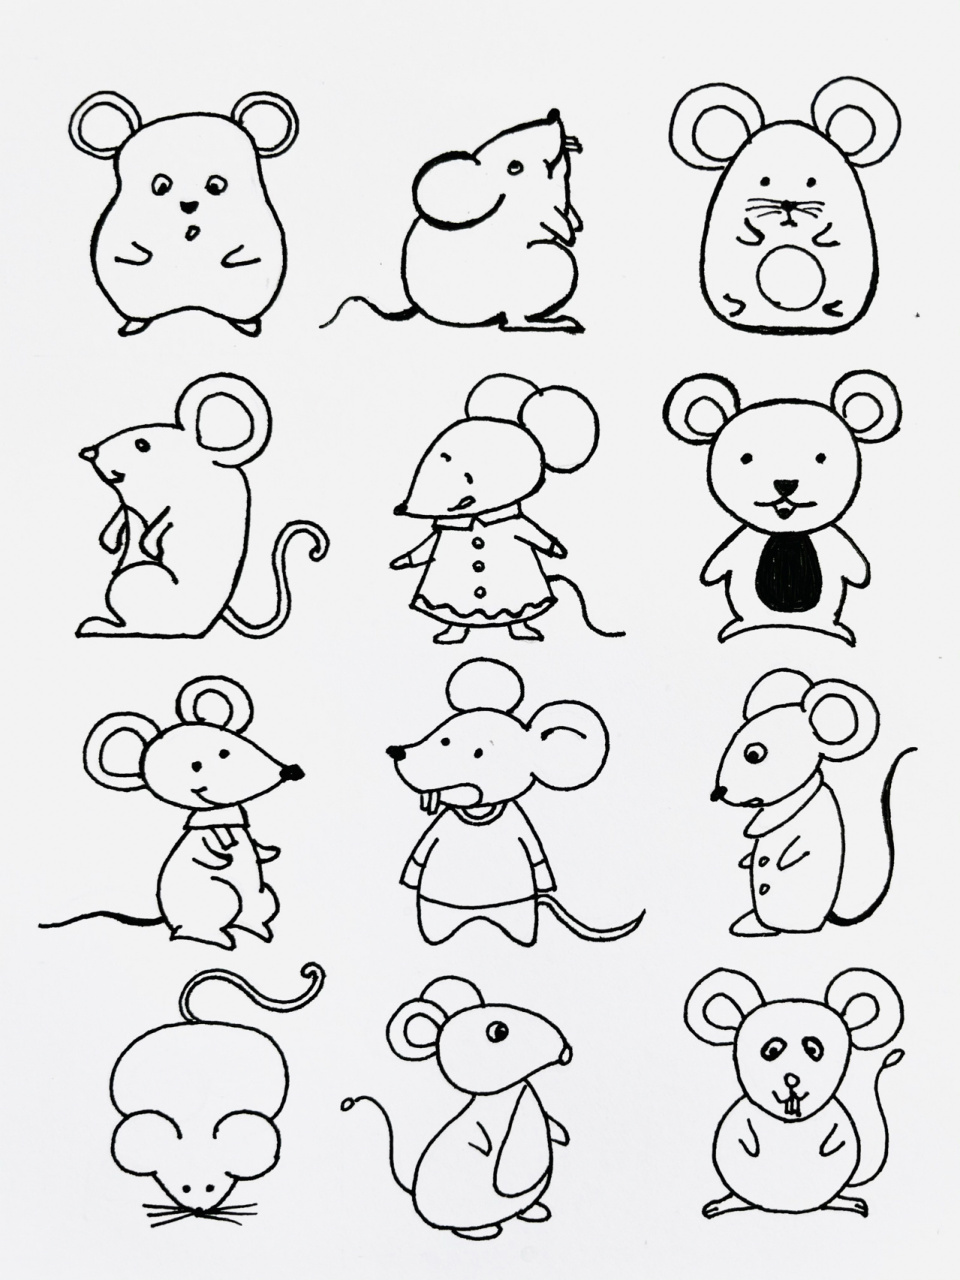 【简笔画】鼠99 分享一组可爱的小老鼠99简笔画 希望大家喜欢